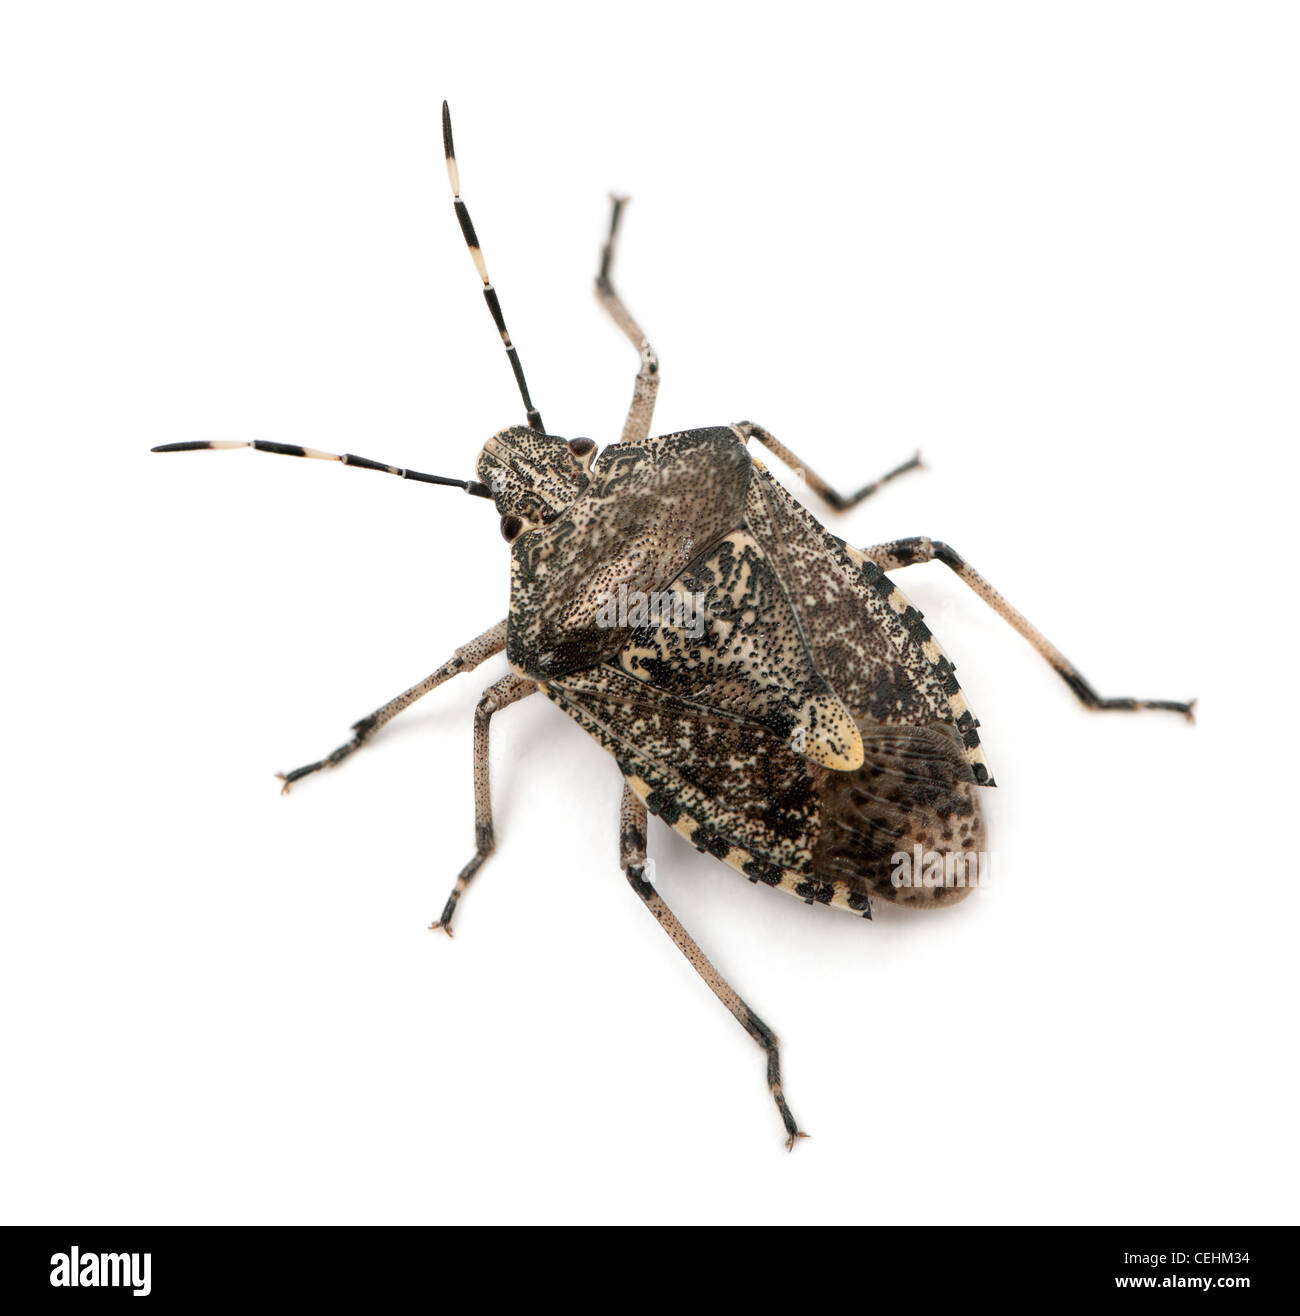 European stink bug, Rhaphigaster nebulosa, against white background Banque D'Images